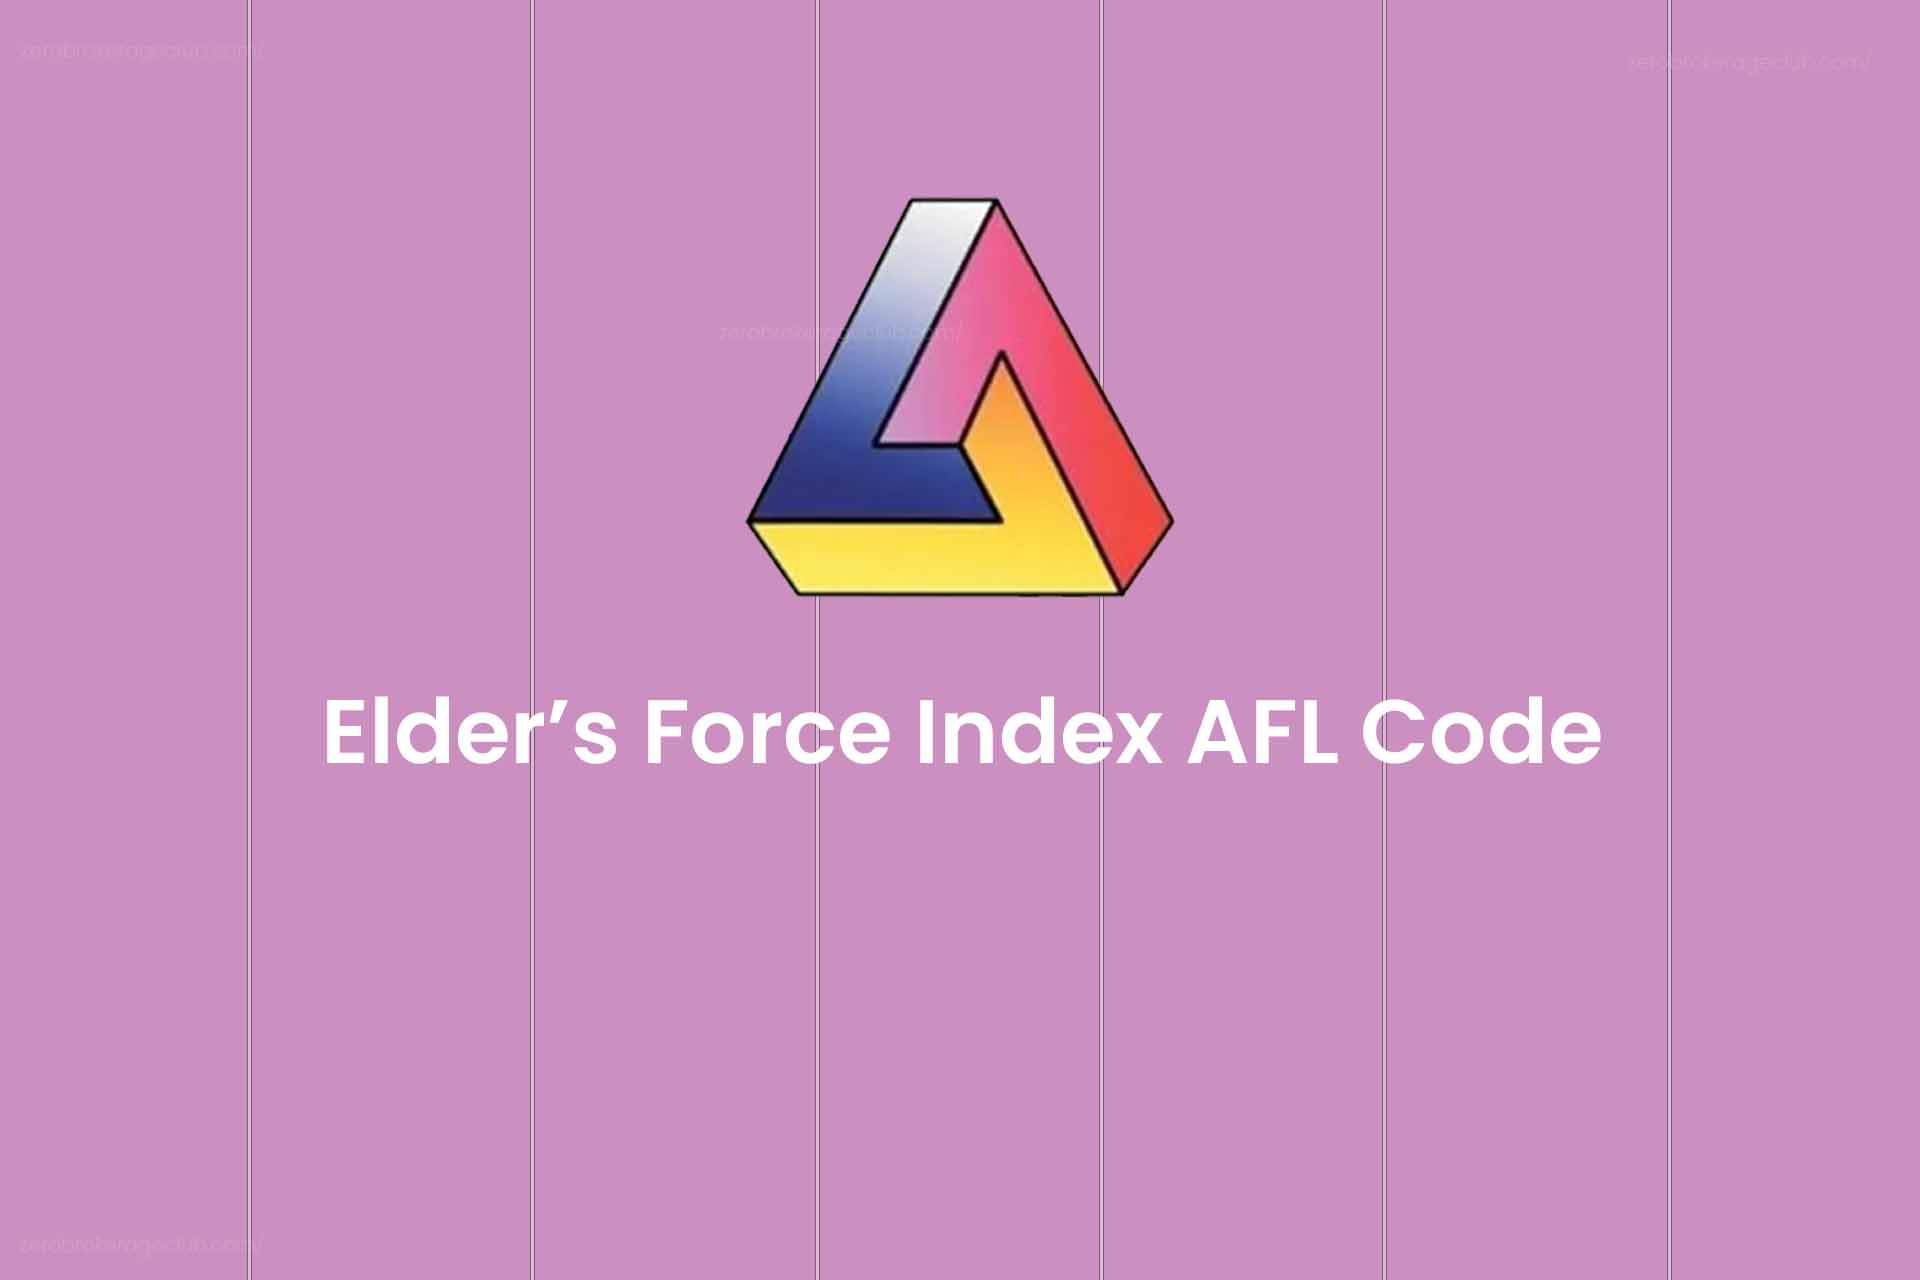 Elder’s Force Index AFL Code